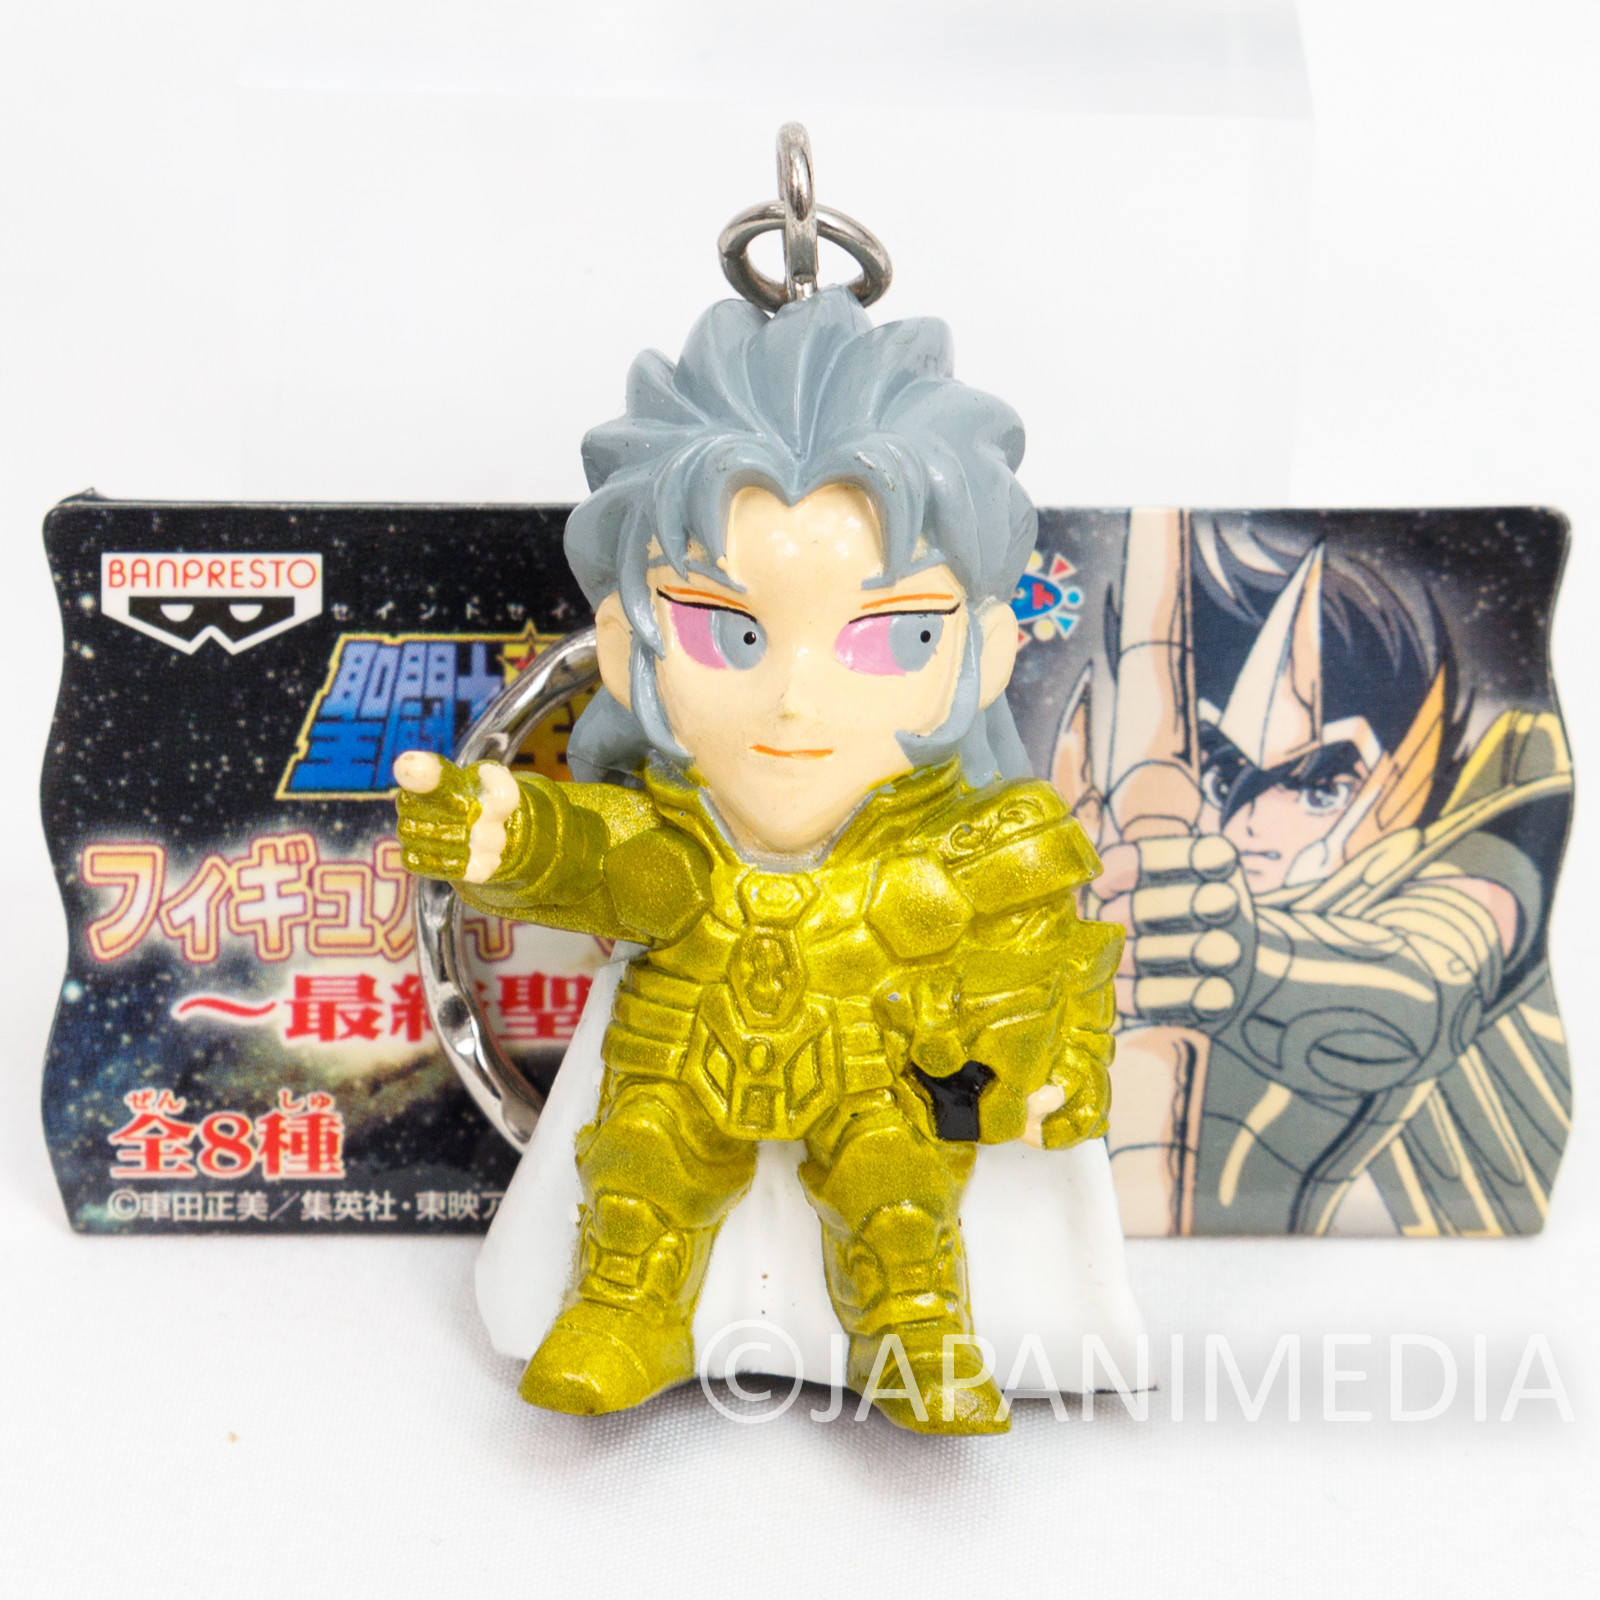 Saint Seiya Gold Saint Gemini Saga Evil Figure Key Chain JAPAN ANIME MANGA